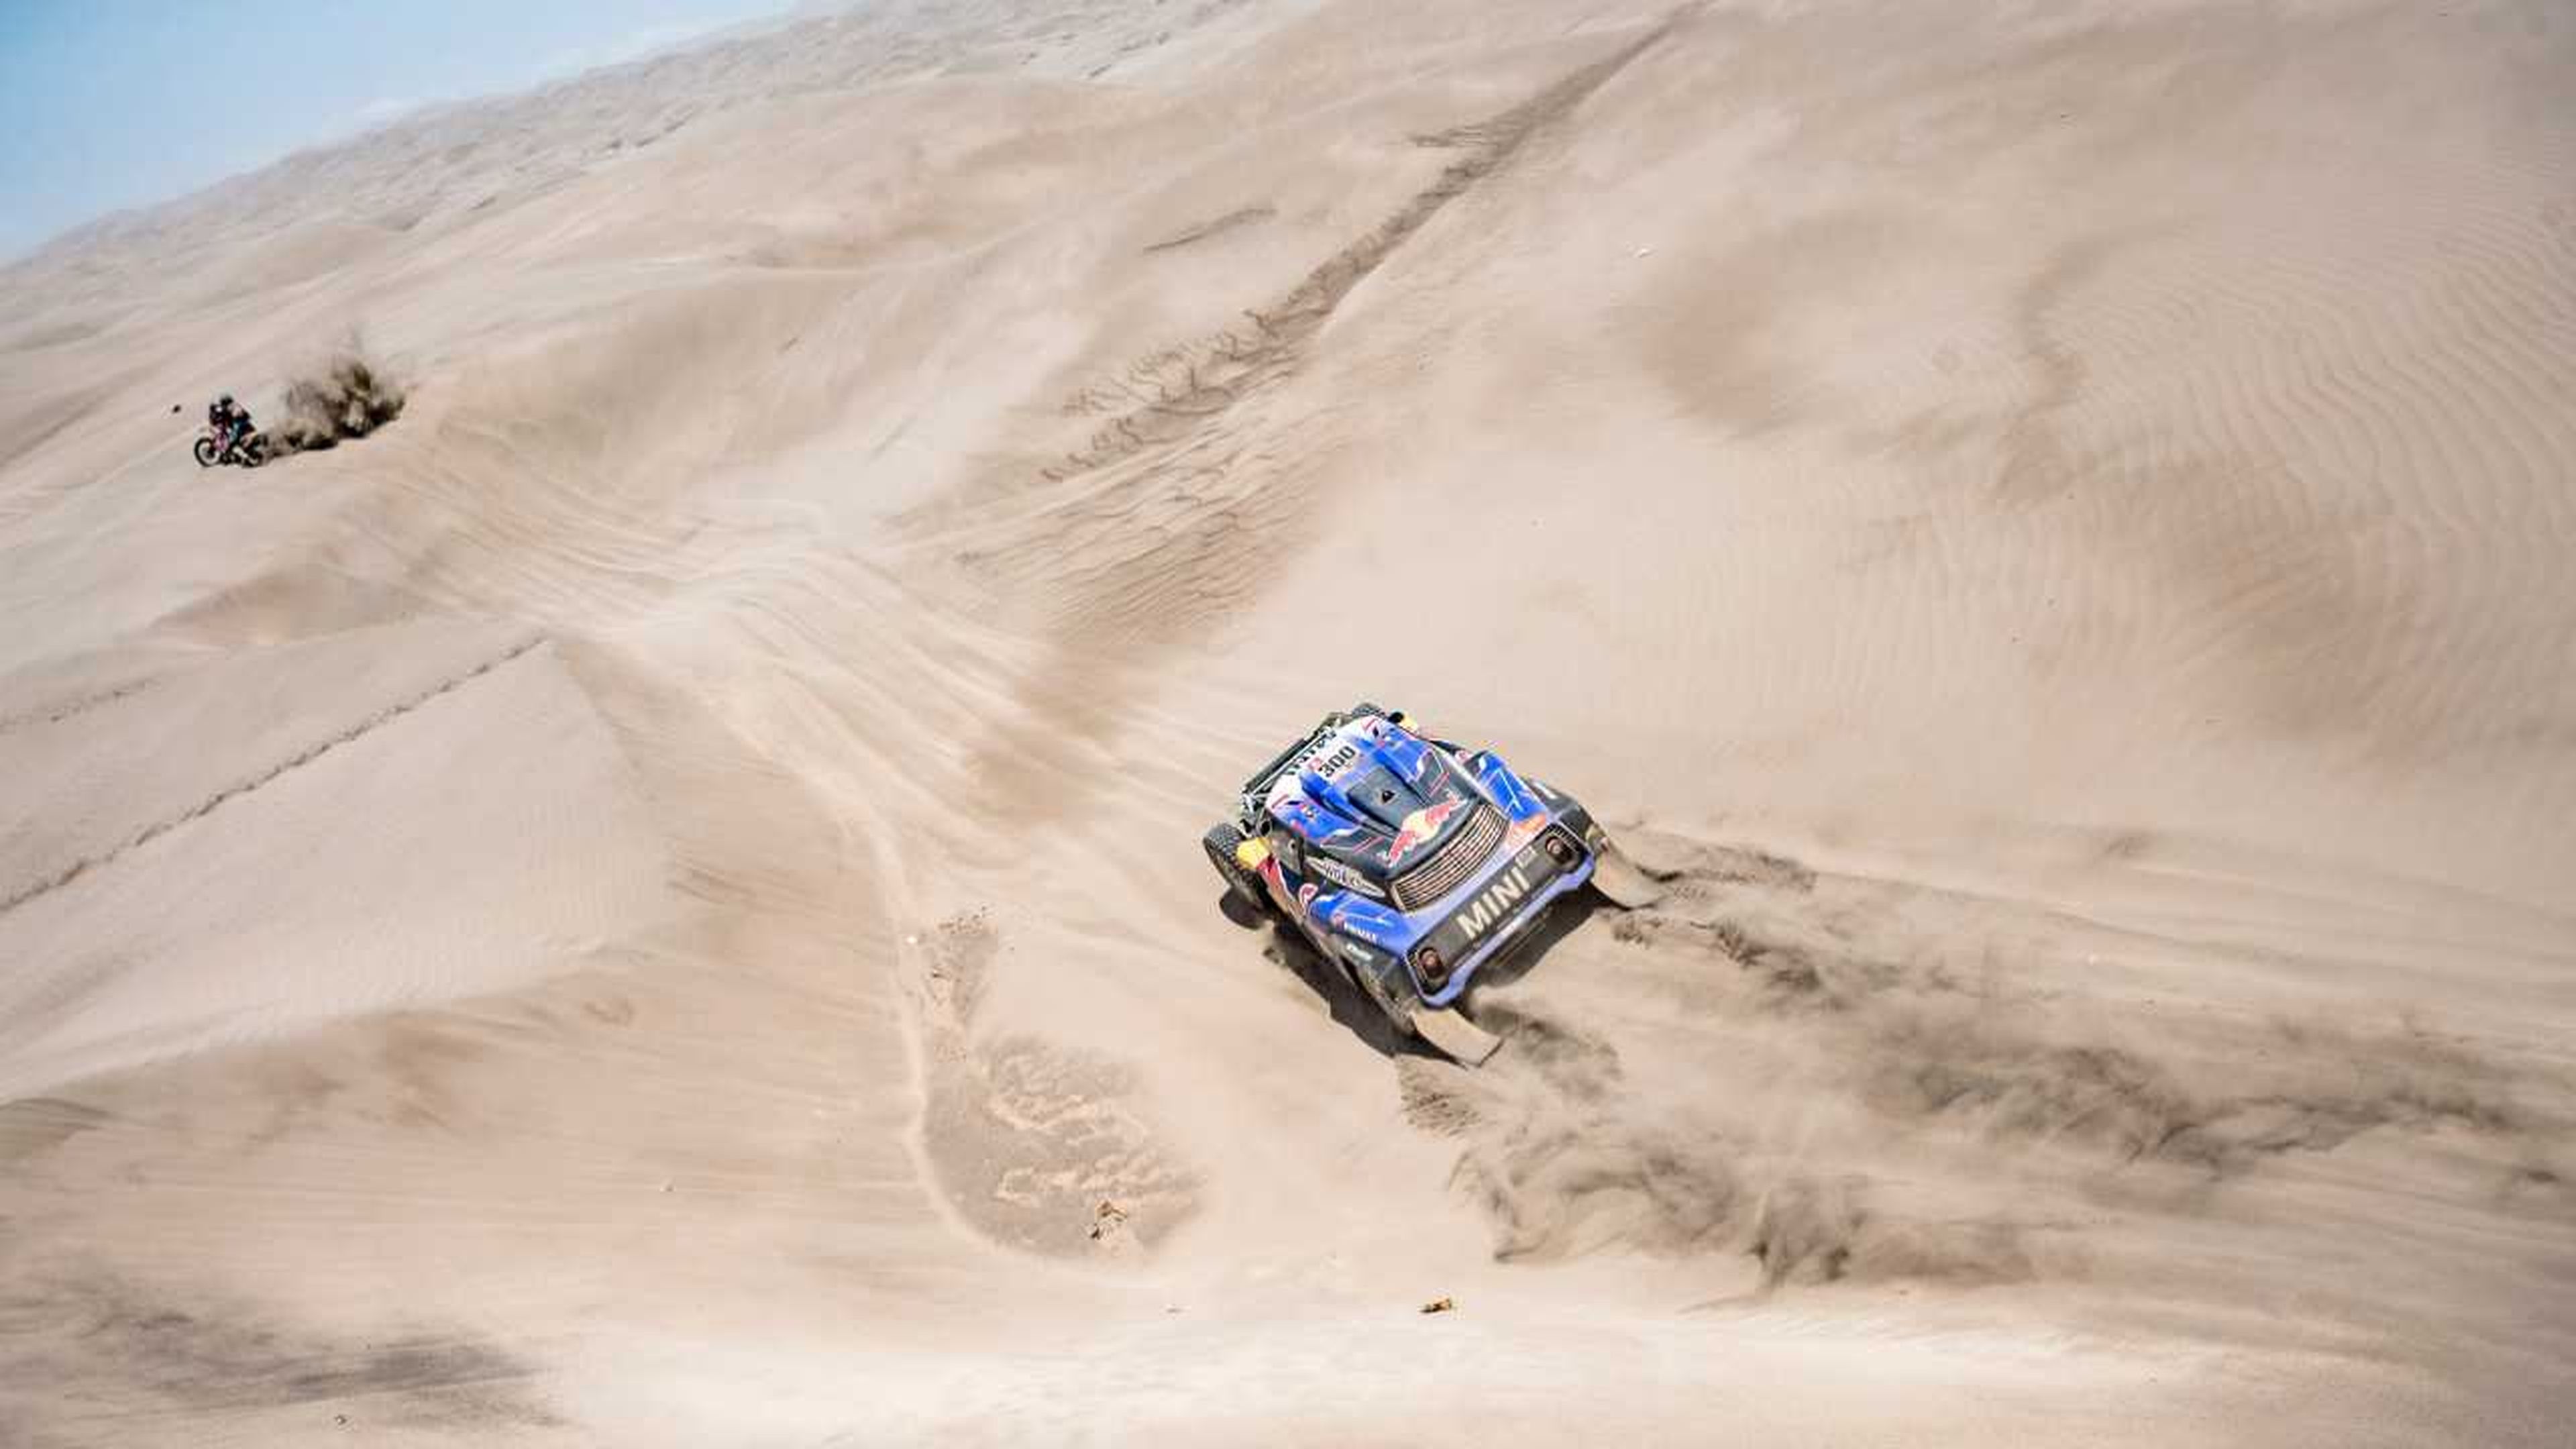 Dunas rally Dakar